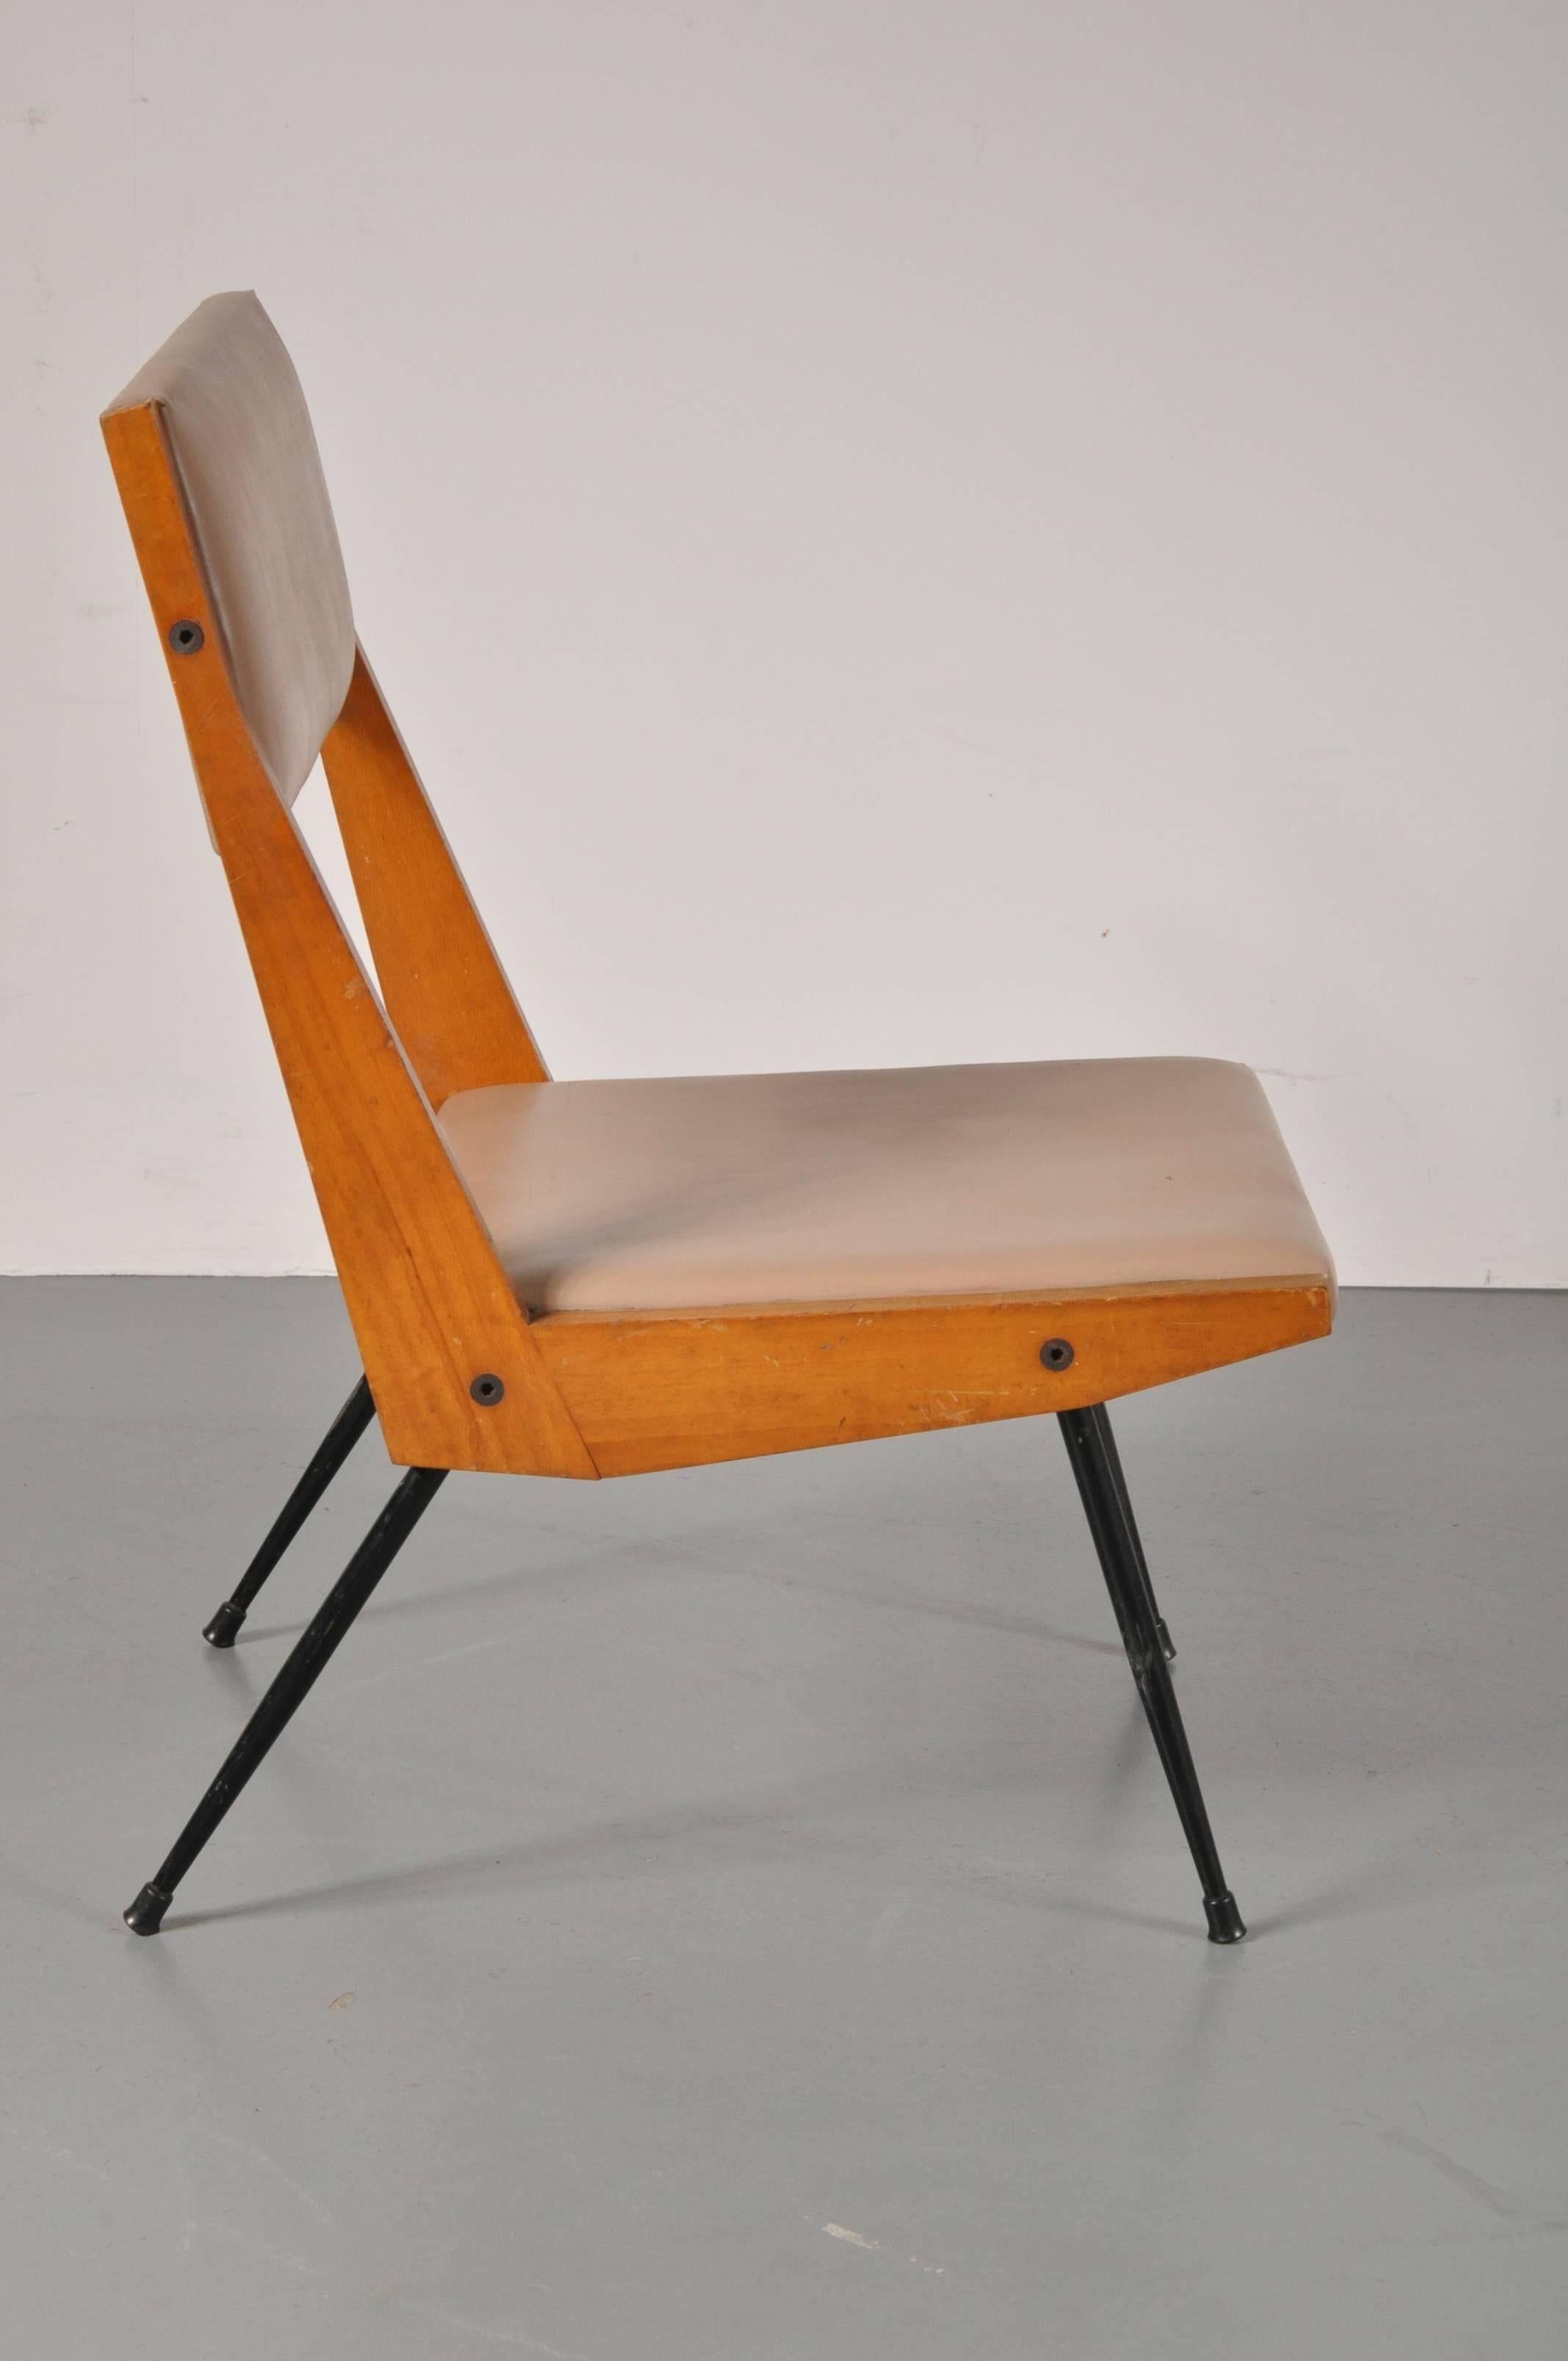 Fauteuil unique attribué à Carlo di Carli, produit en Italie, vers 1950.

Cette chaise combine les matériaux d'une manière très complémentaire. Les pieds sont en métal laqué noir de haute qualité, le cadre est en beau bois de hêtre et il a encore